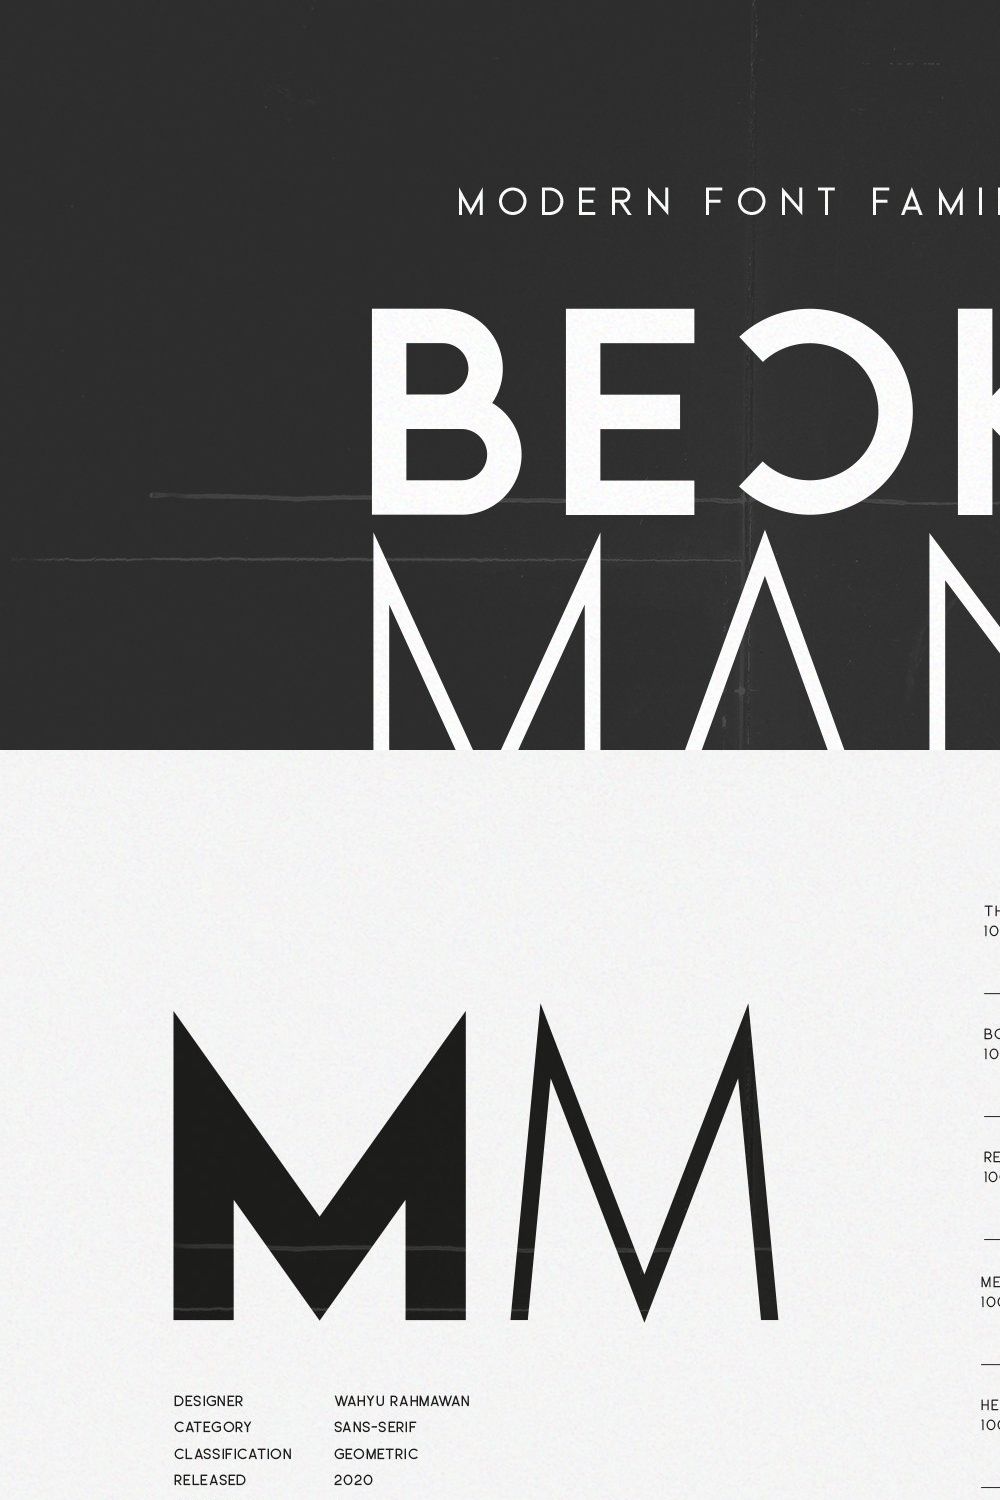 Beckman Modern Font pinterest preview image.